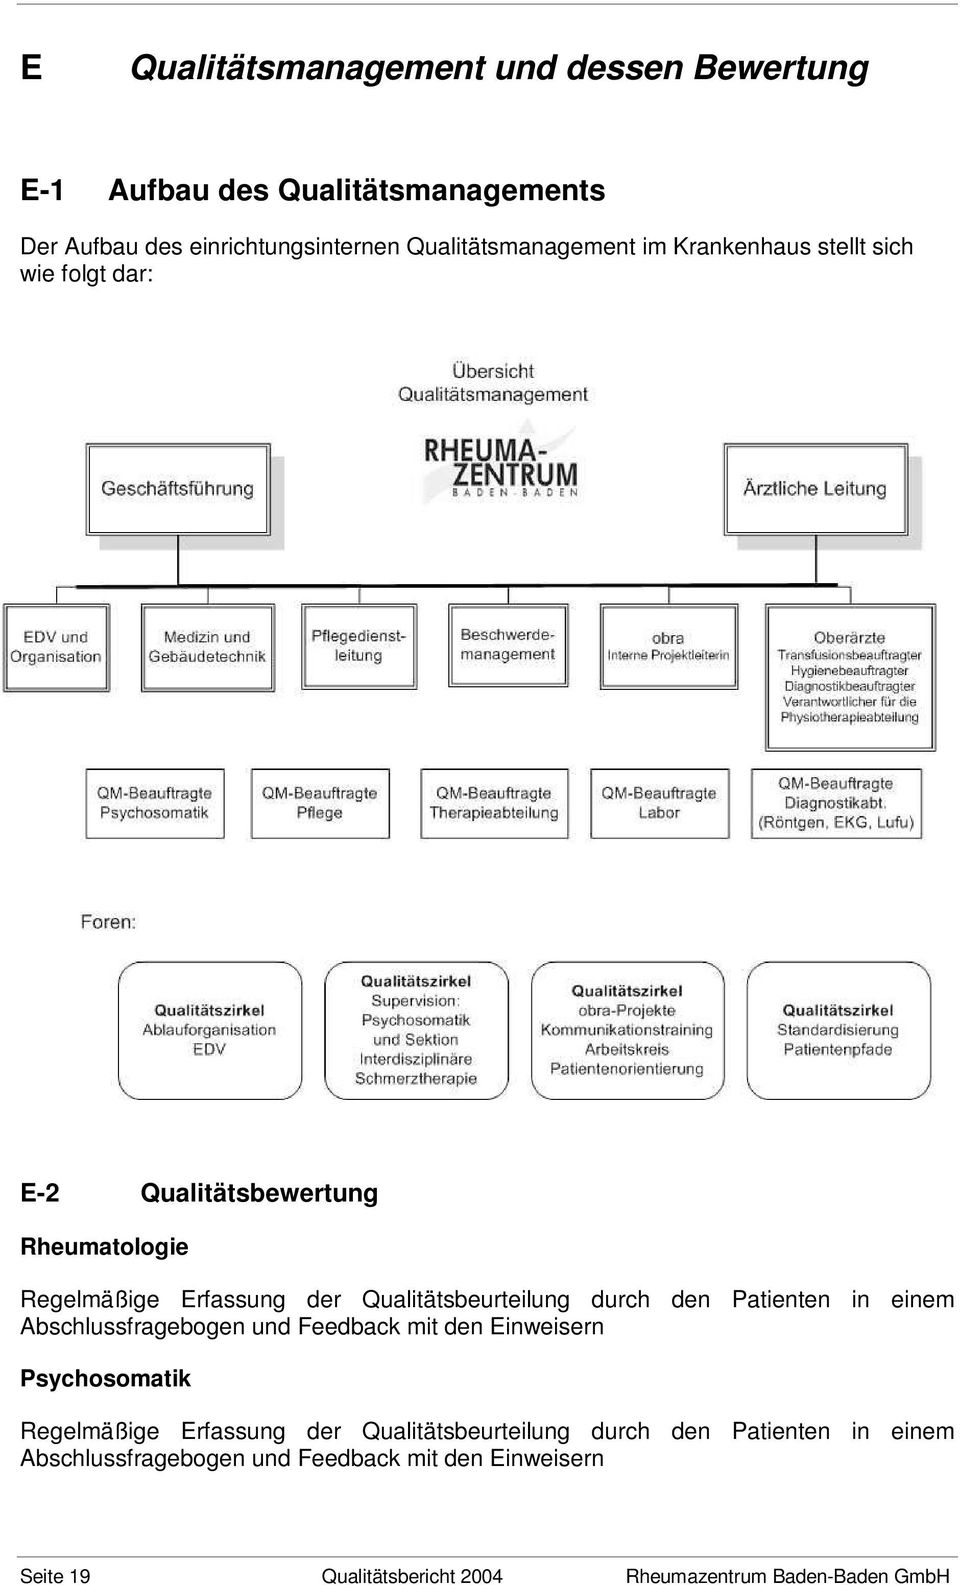 Patienten in einem Abschlussfragebogen und Feedback mit den Einweisern Psychosomatik Regelmäßige Erfassung der Qualitätsbeurteilung